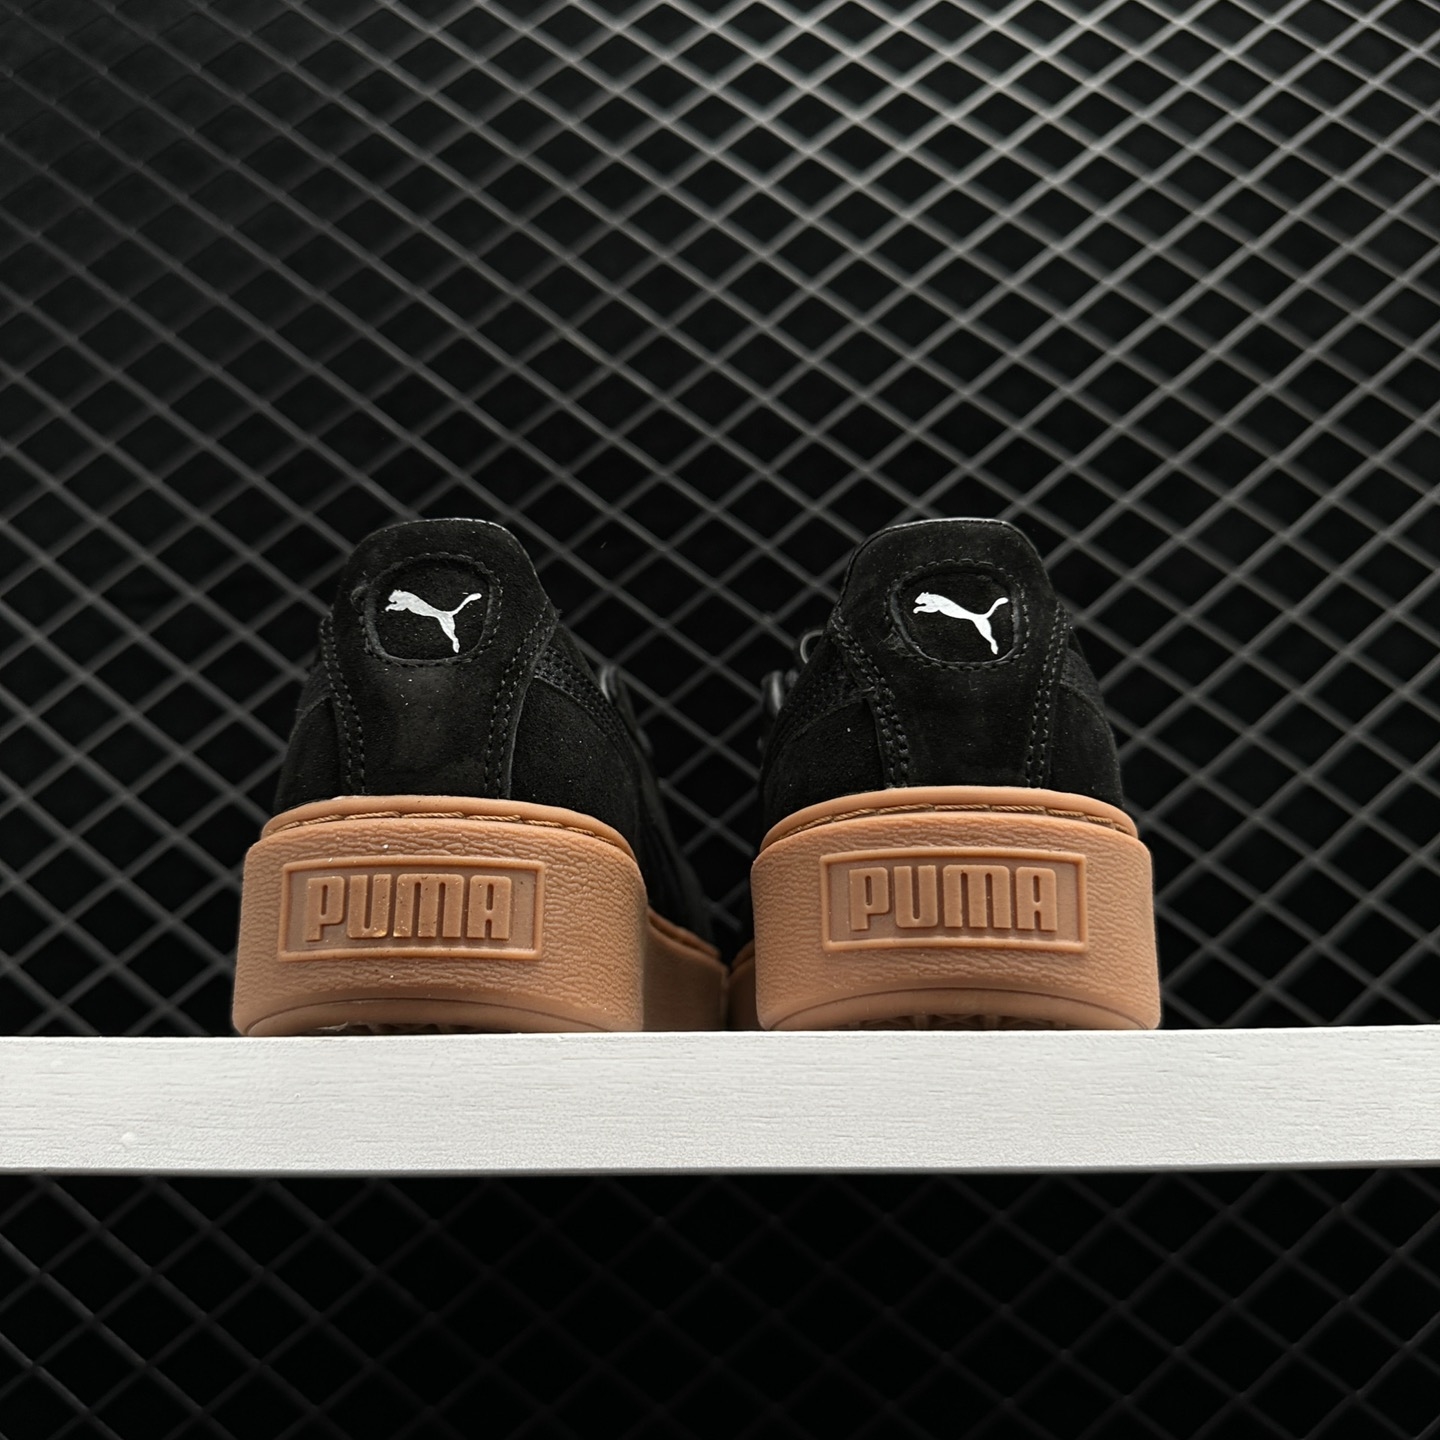 Puma Wmns Suede Platform 'Bubble - Black' 366439 01 | Stylish Women's Sneakers